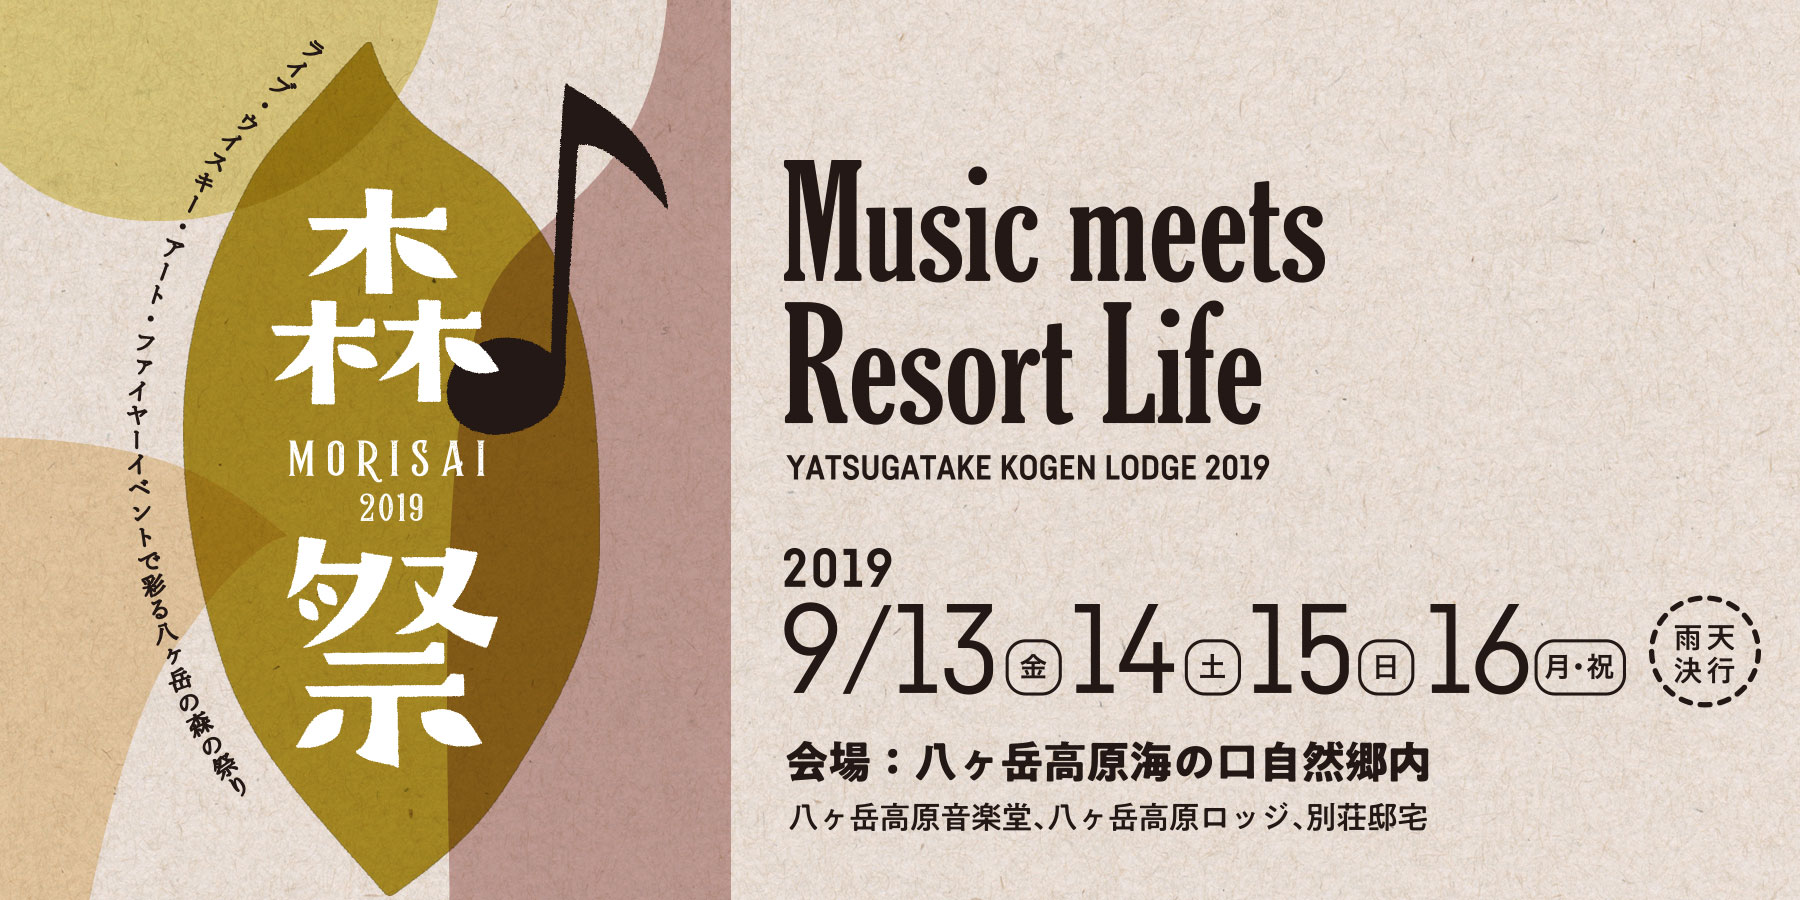 森祭 MORISAI 2019 Music meets Resort Life